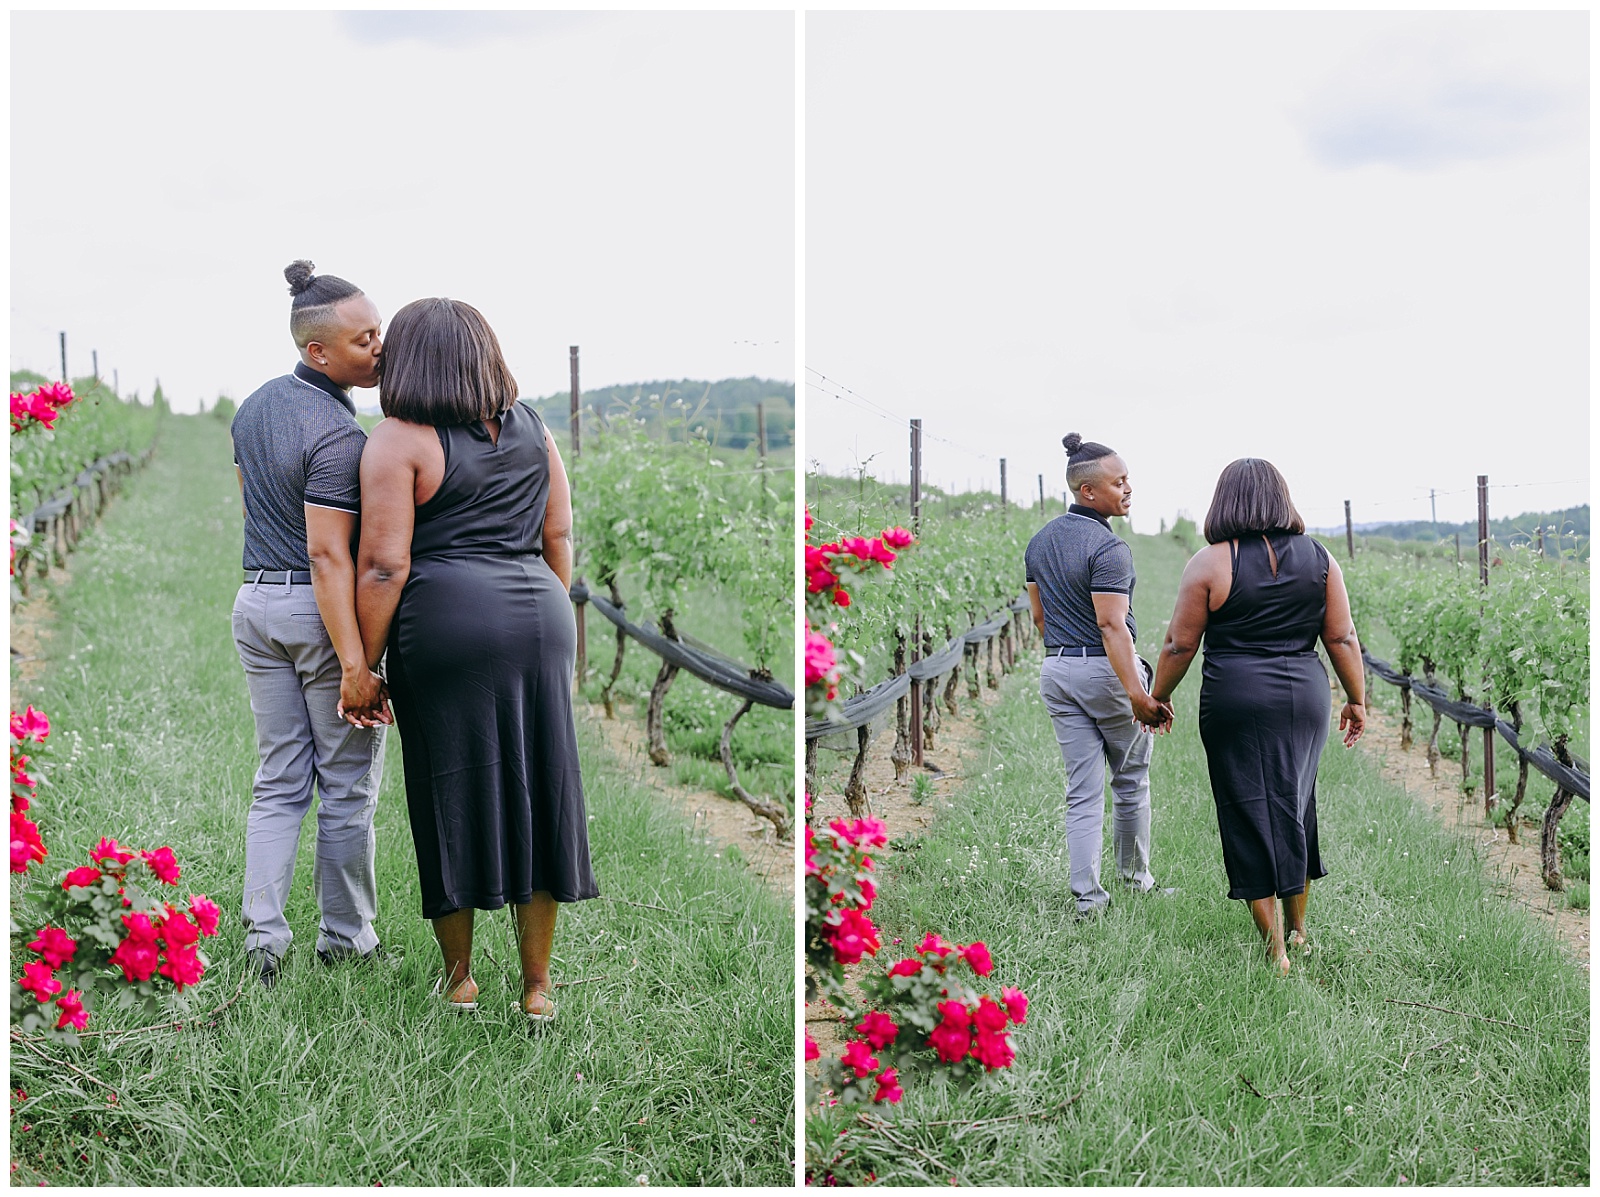 couple walking in winery